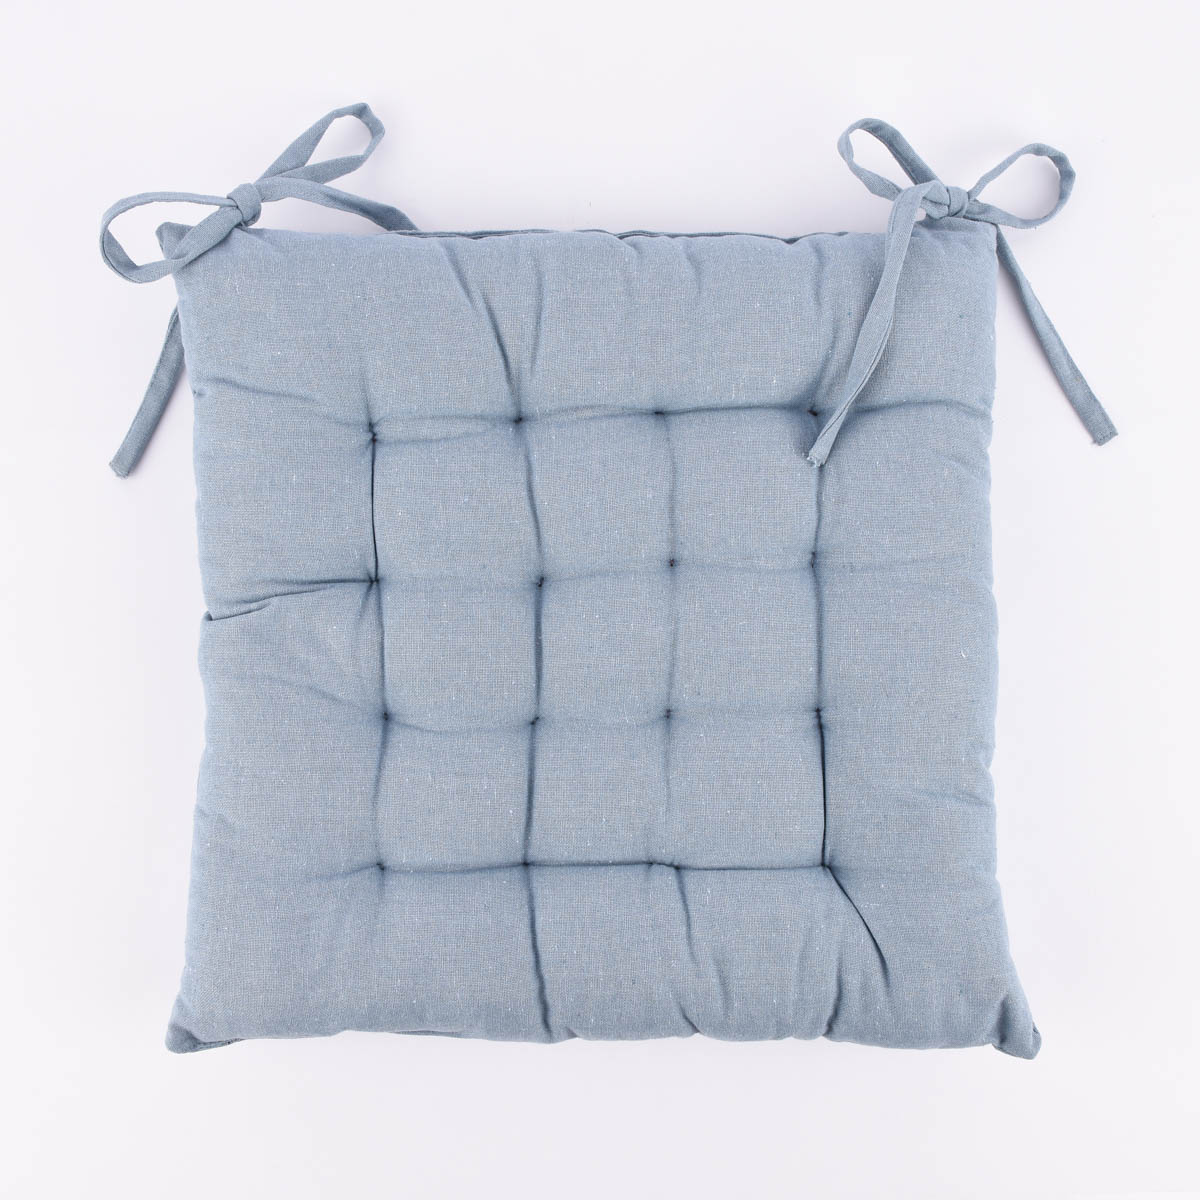 Stuhlkissen Sitzkissen aus Baumwolle mit Binderbändern und 16facher  Punktsteppung hellblau ca. 38x38cm